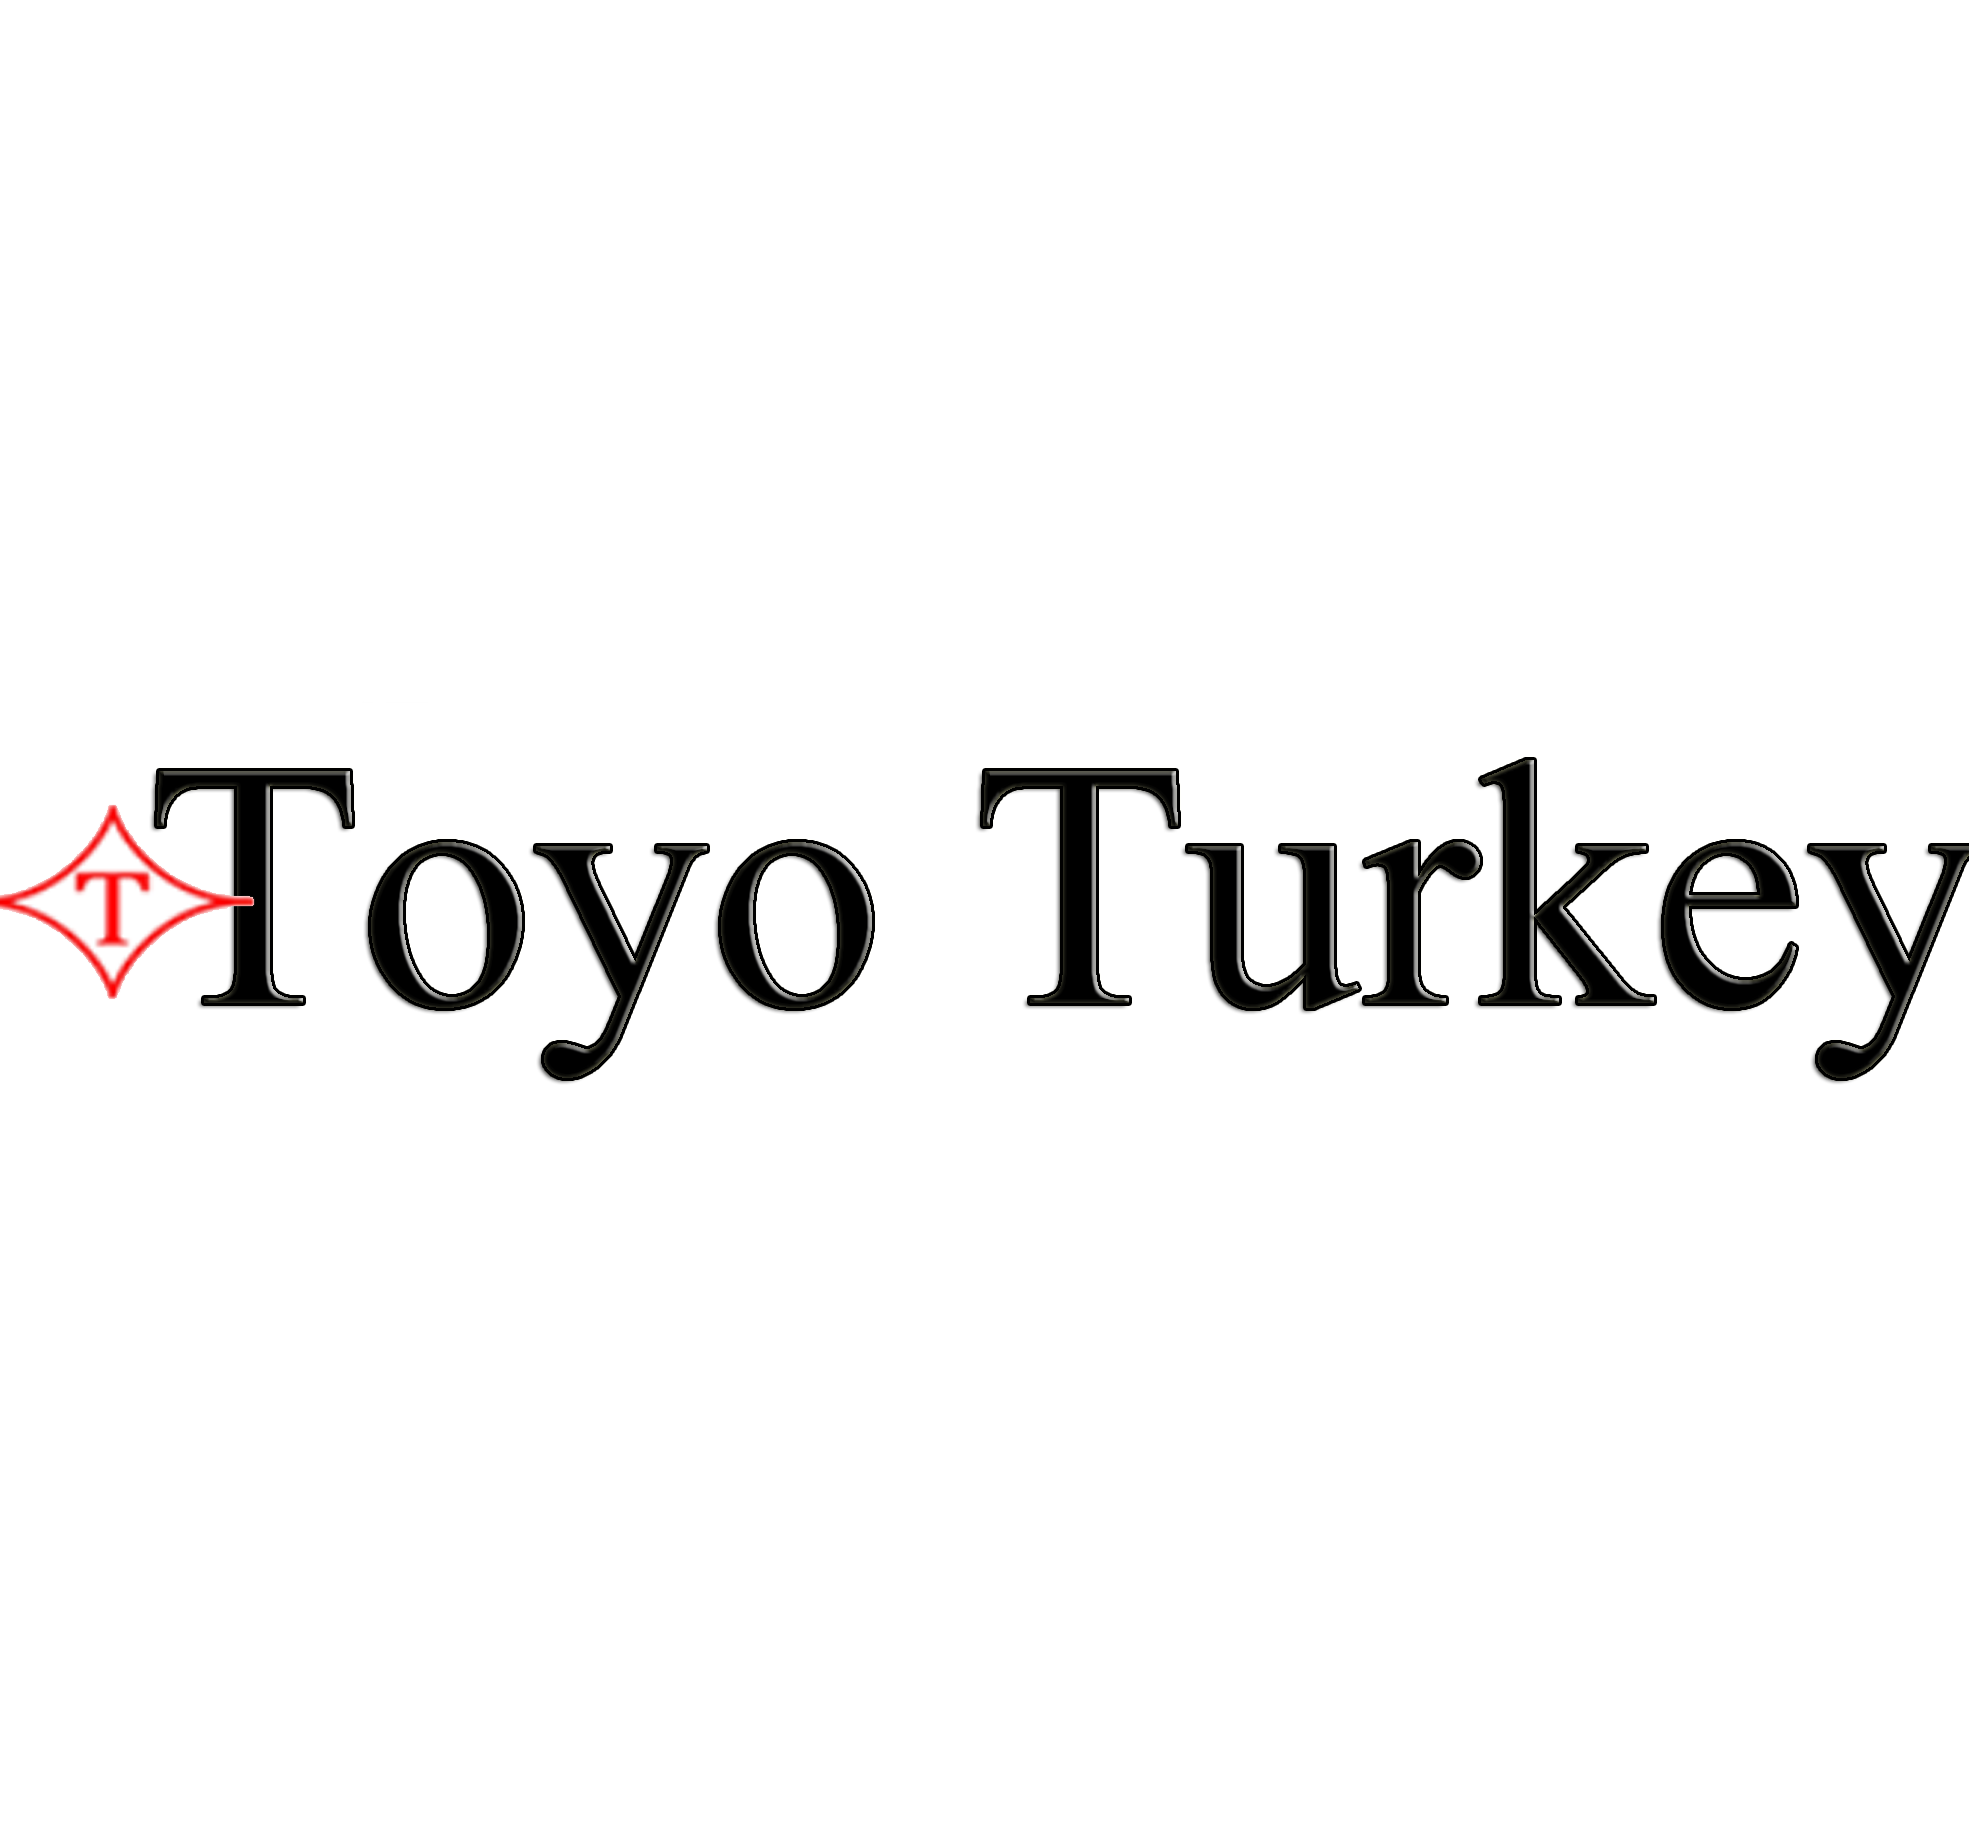 Toyo Turkey